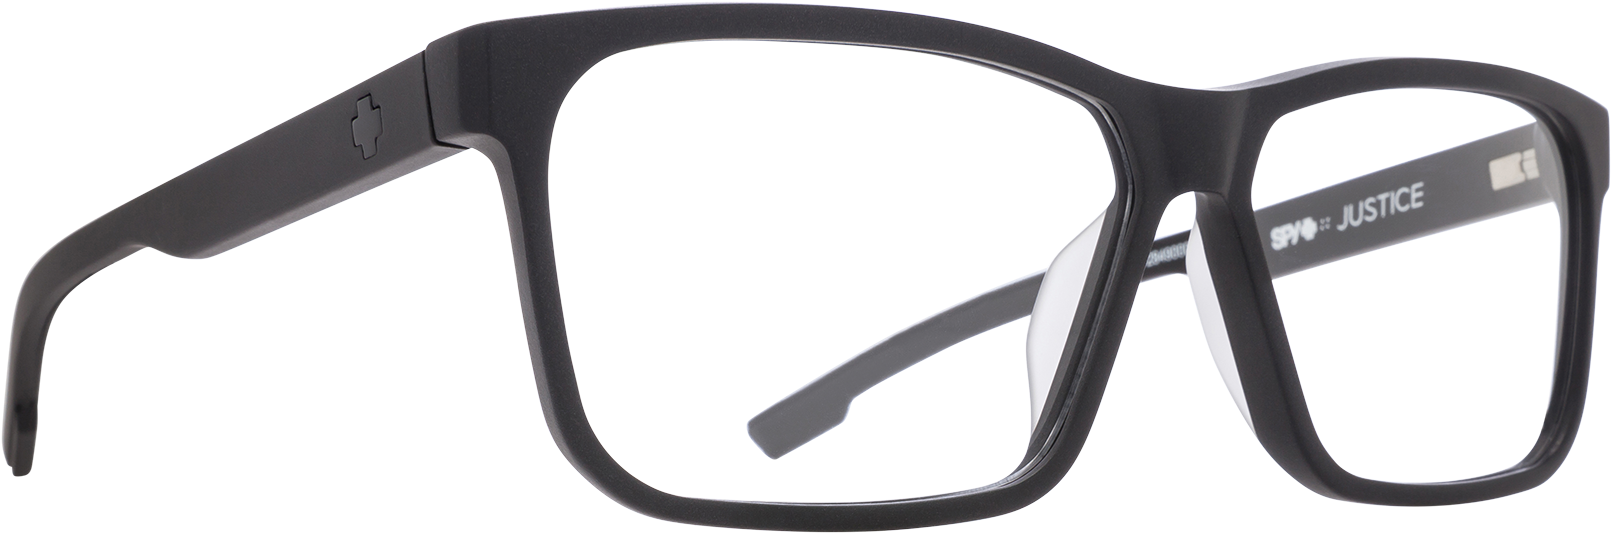 Black Designer Eyeglasses Transparent Background